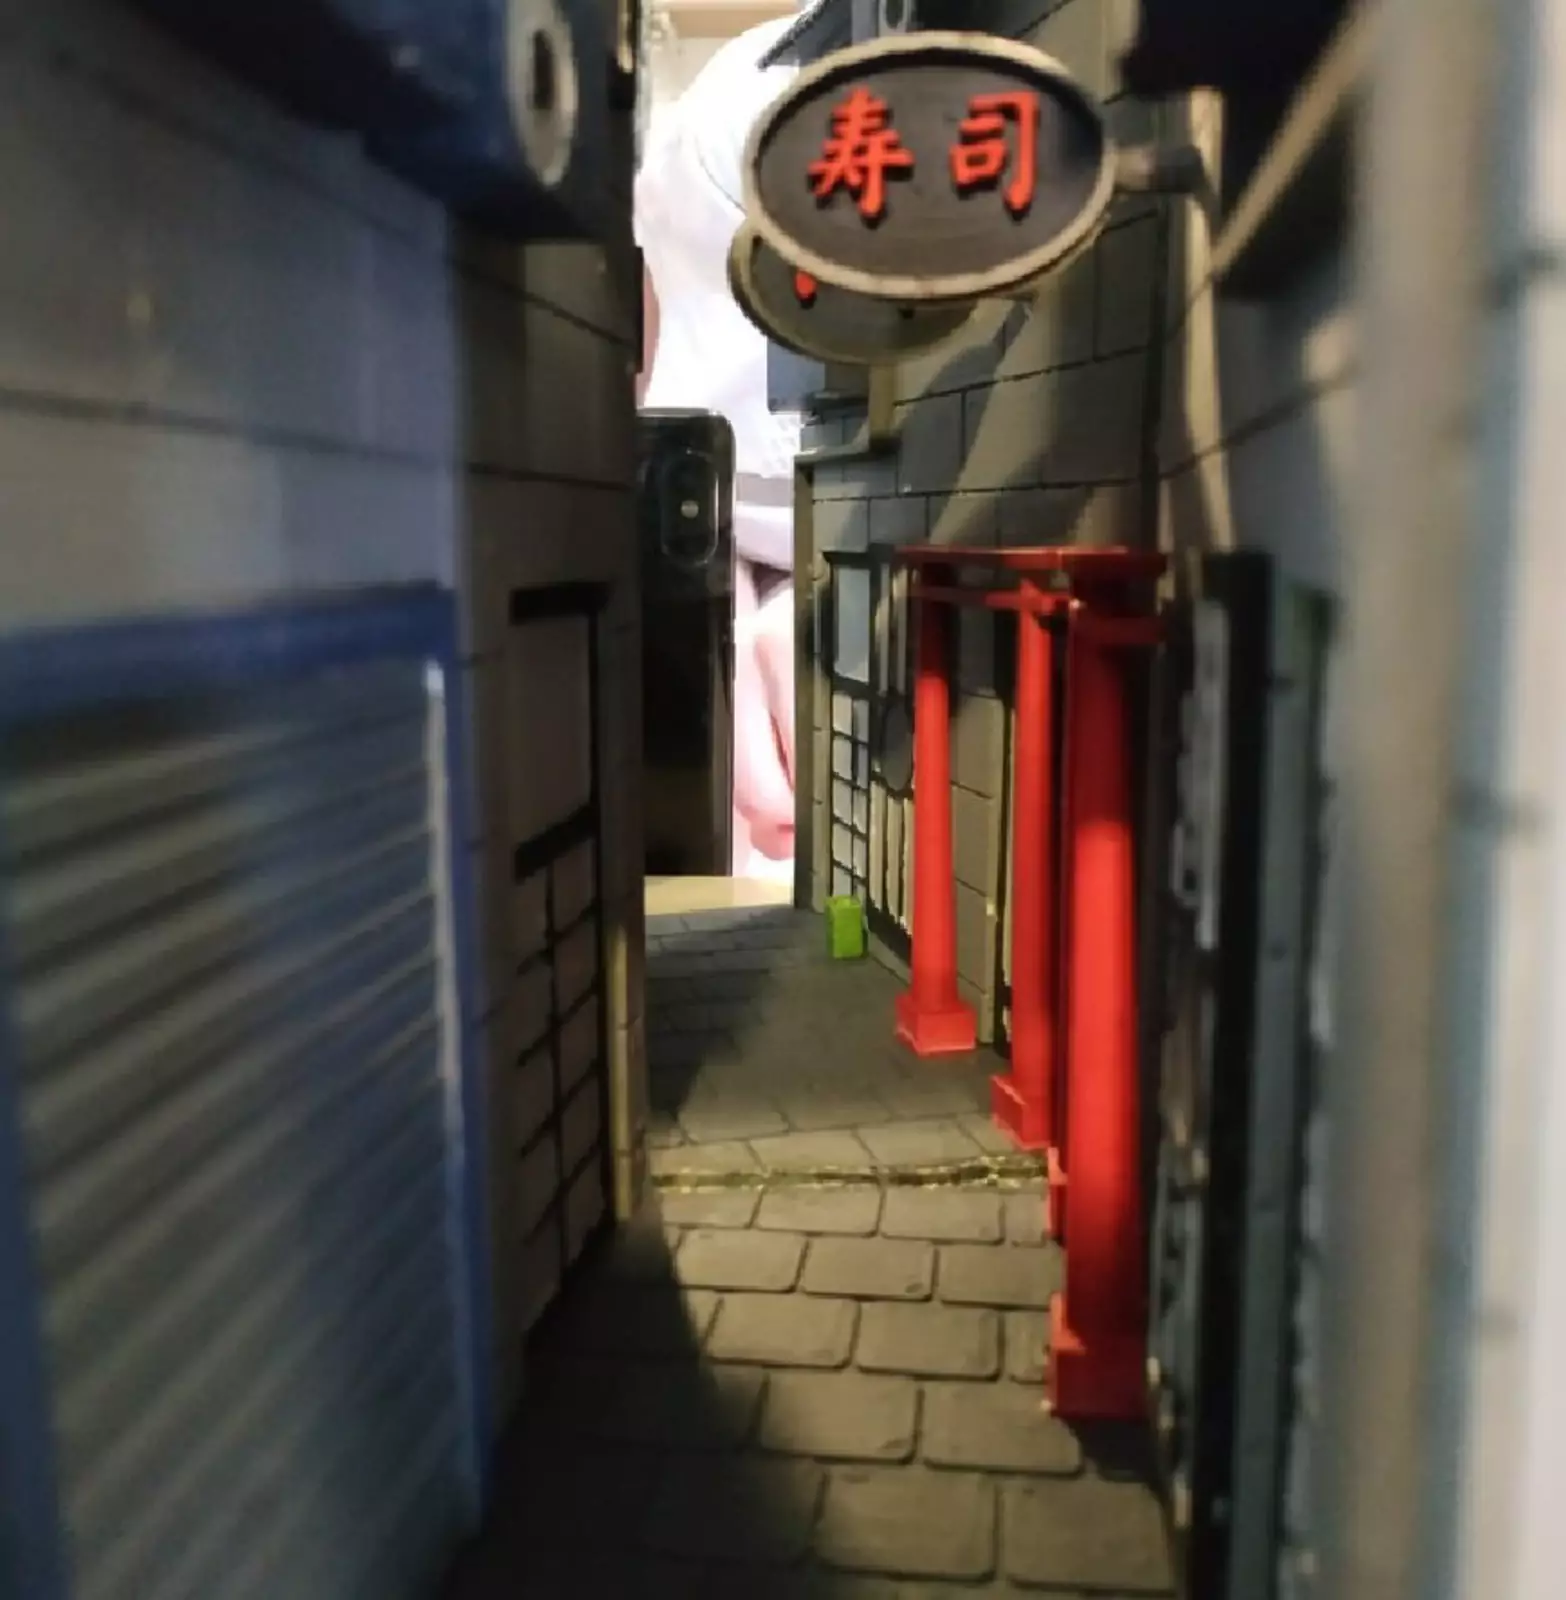 Переулок в японском стиле.